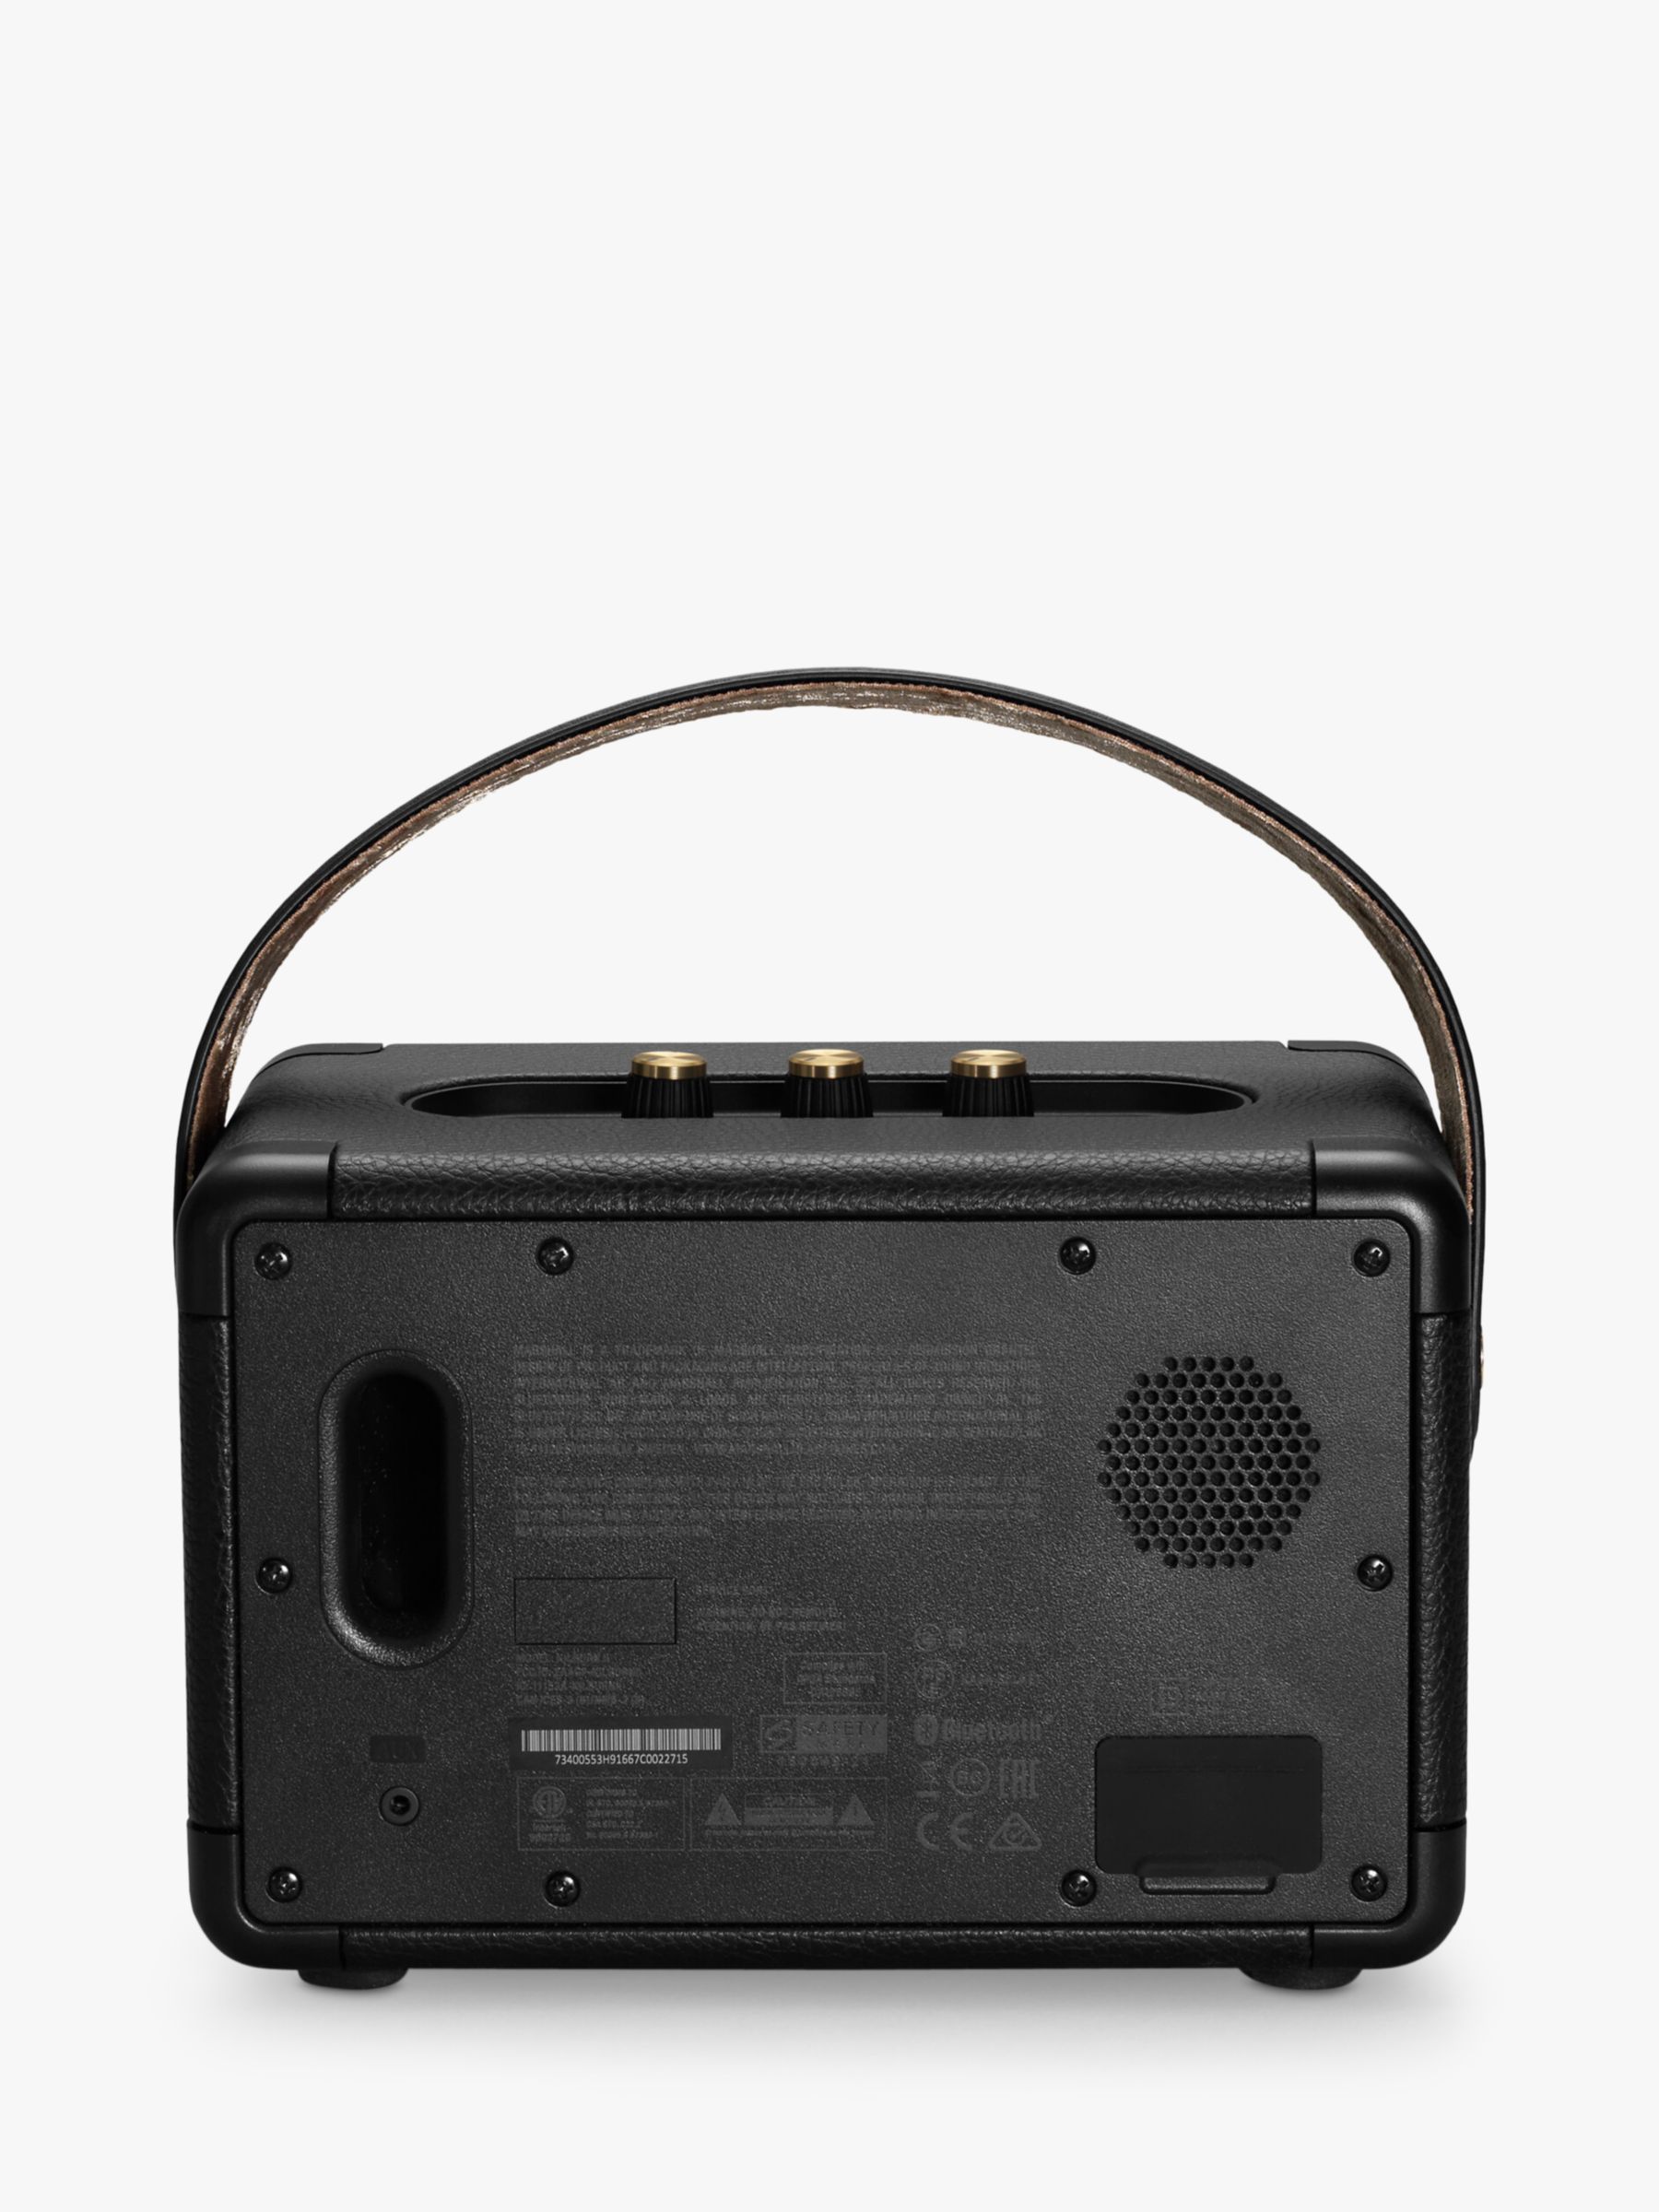 II Bluetooth Kilburn Black Speaker, Brass & Portable Marshall